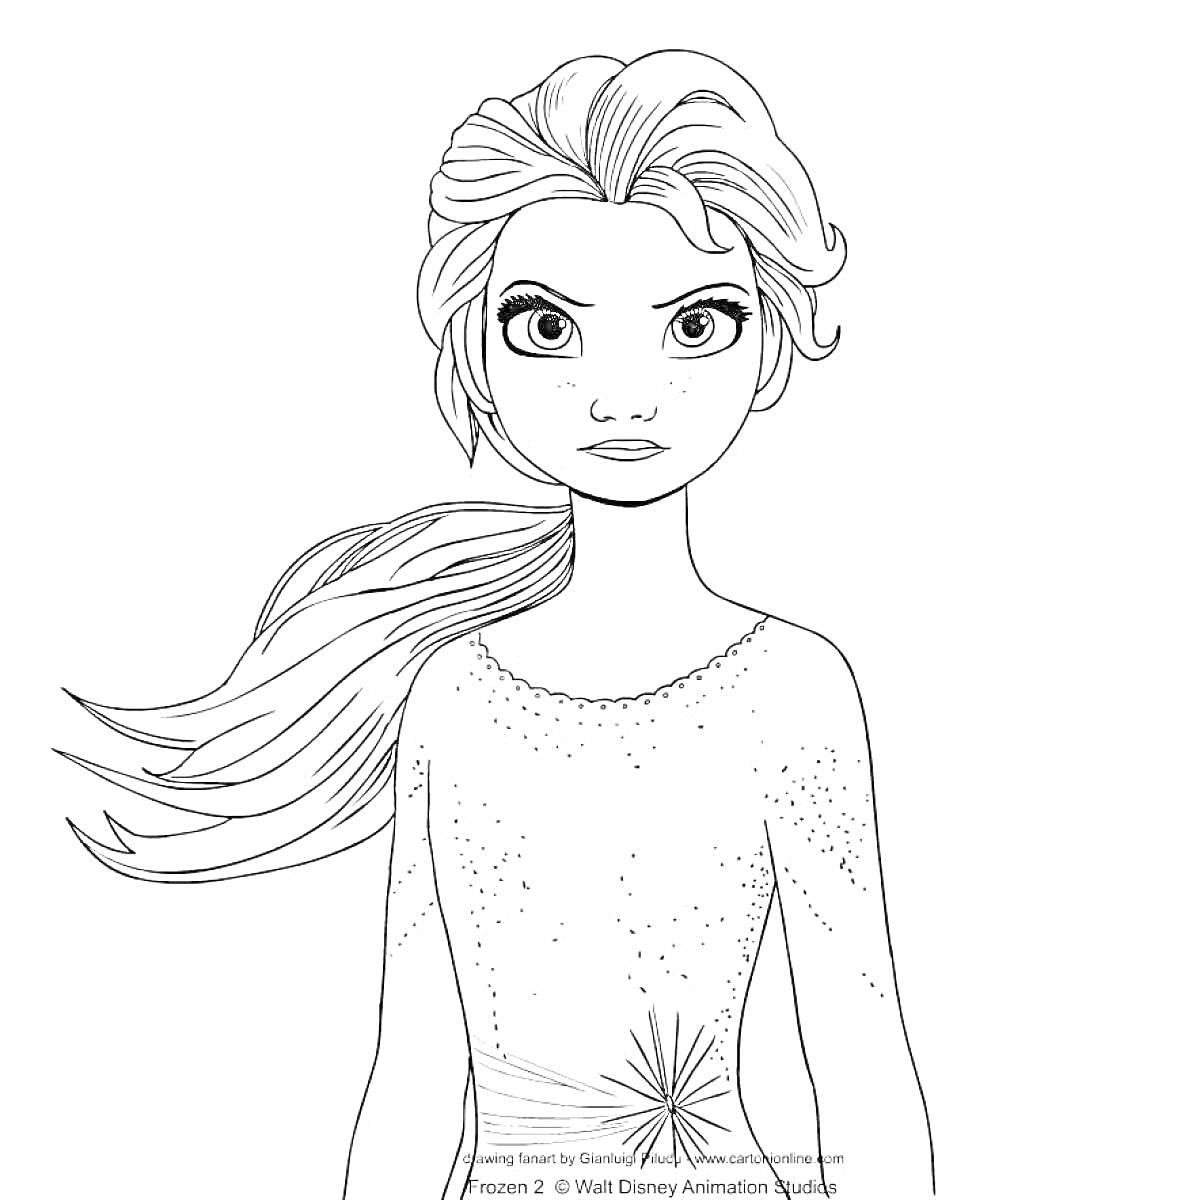 Раскраска Принцесса с длинными волосами в платье